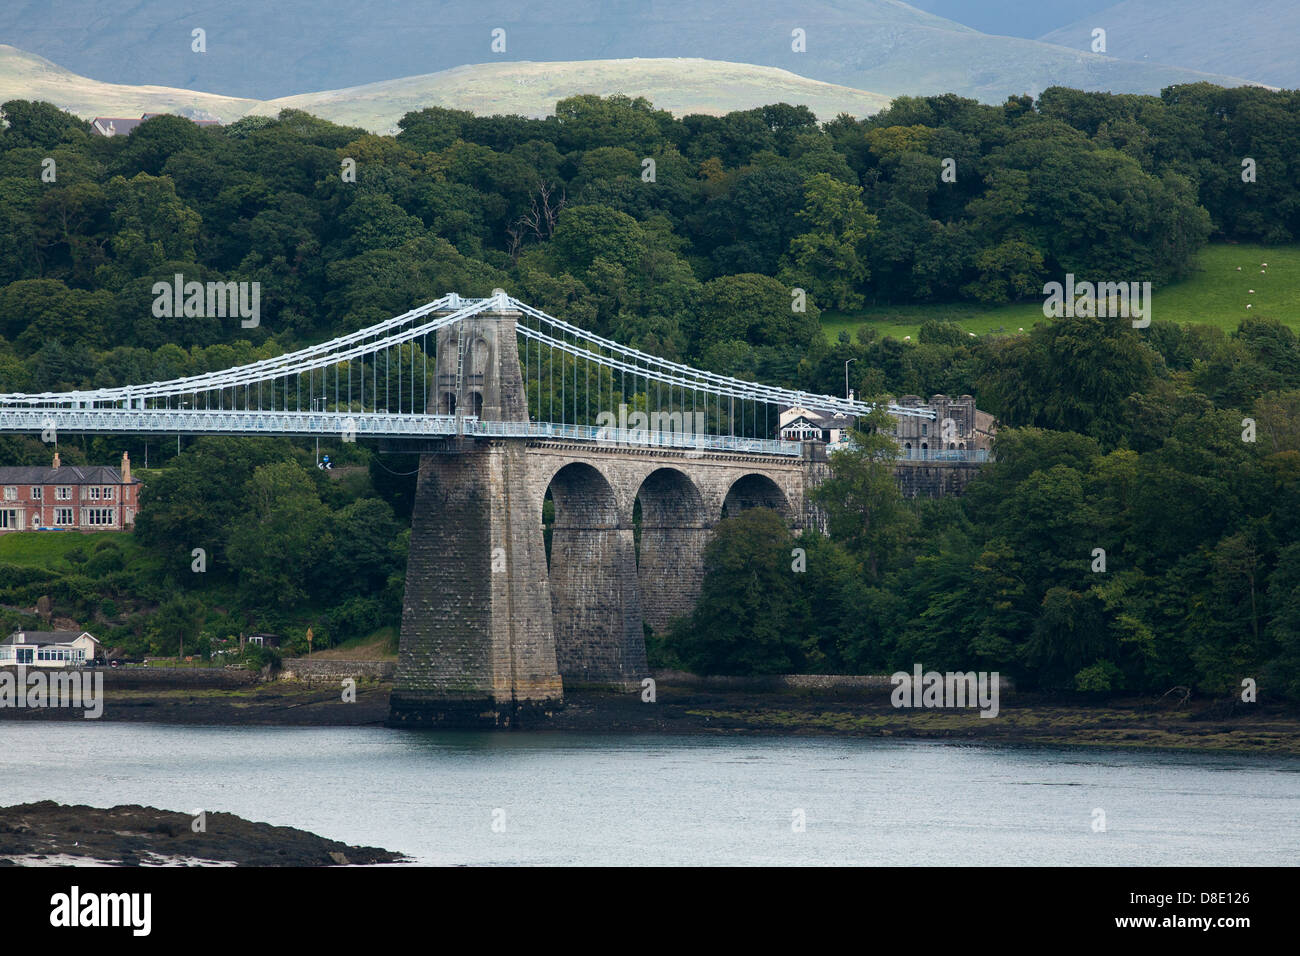 Une vue sur le célèbre pont suspendu de Menai reliant le pays de Galles d'Anglesey, qui a été conçu par Thomas Telford Banque D'Images